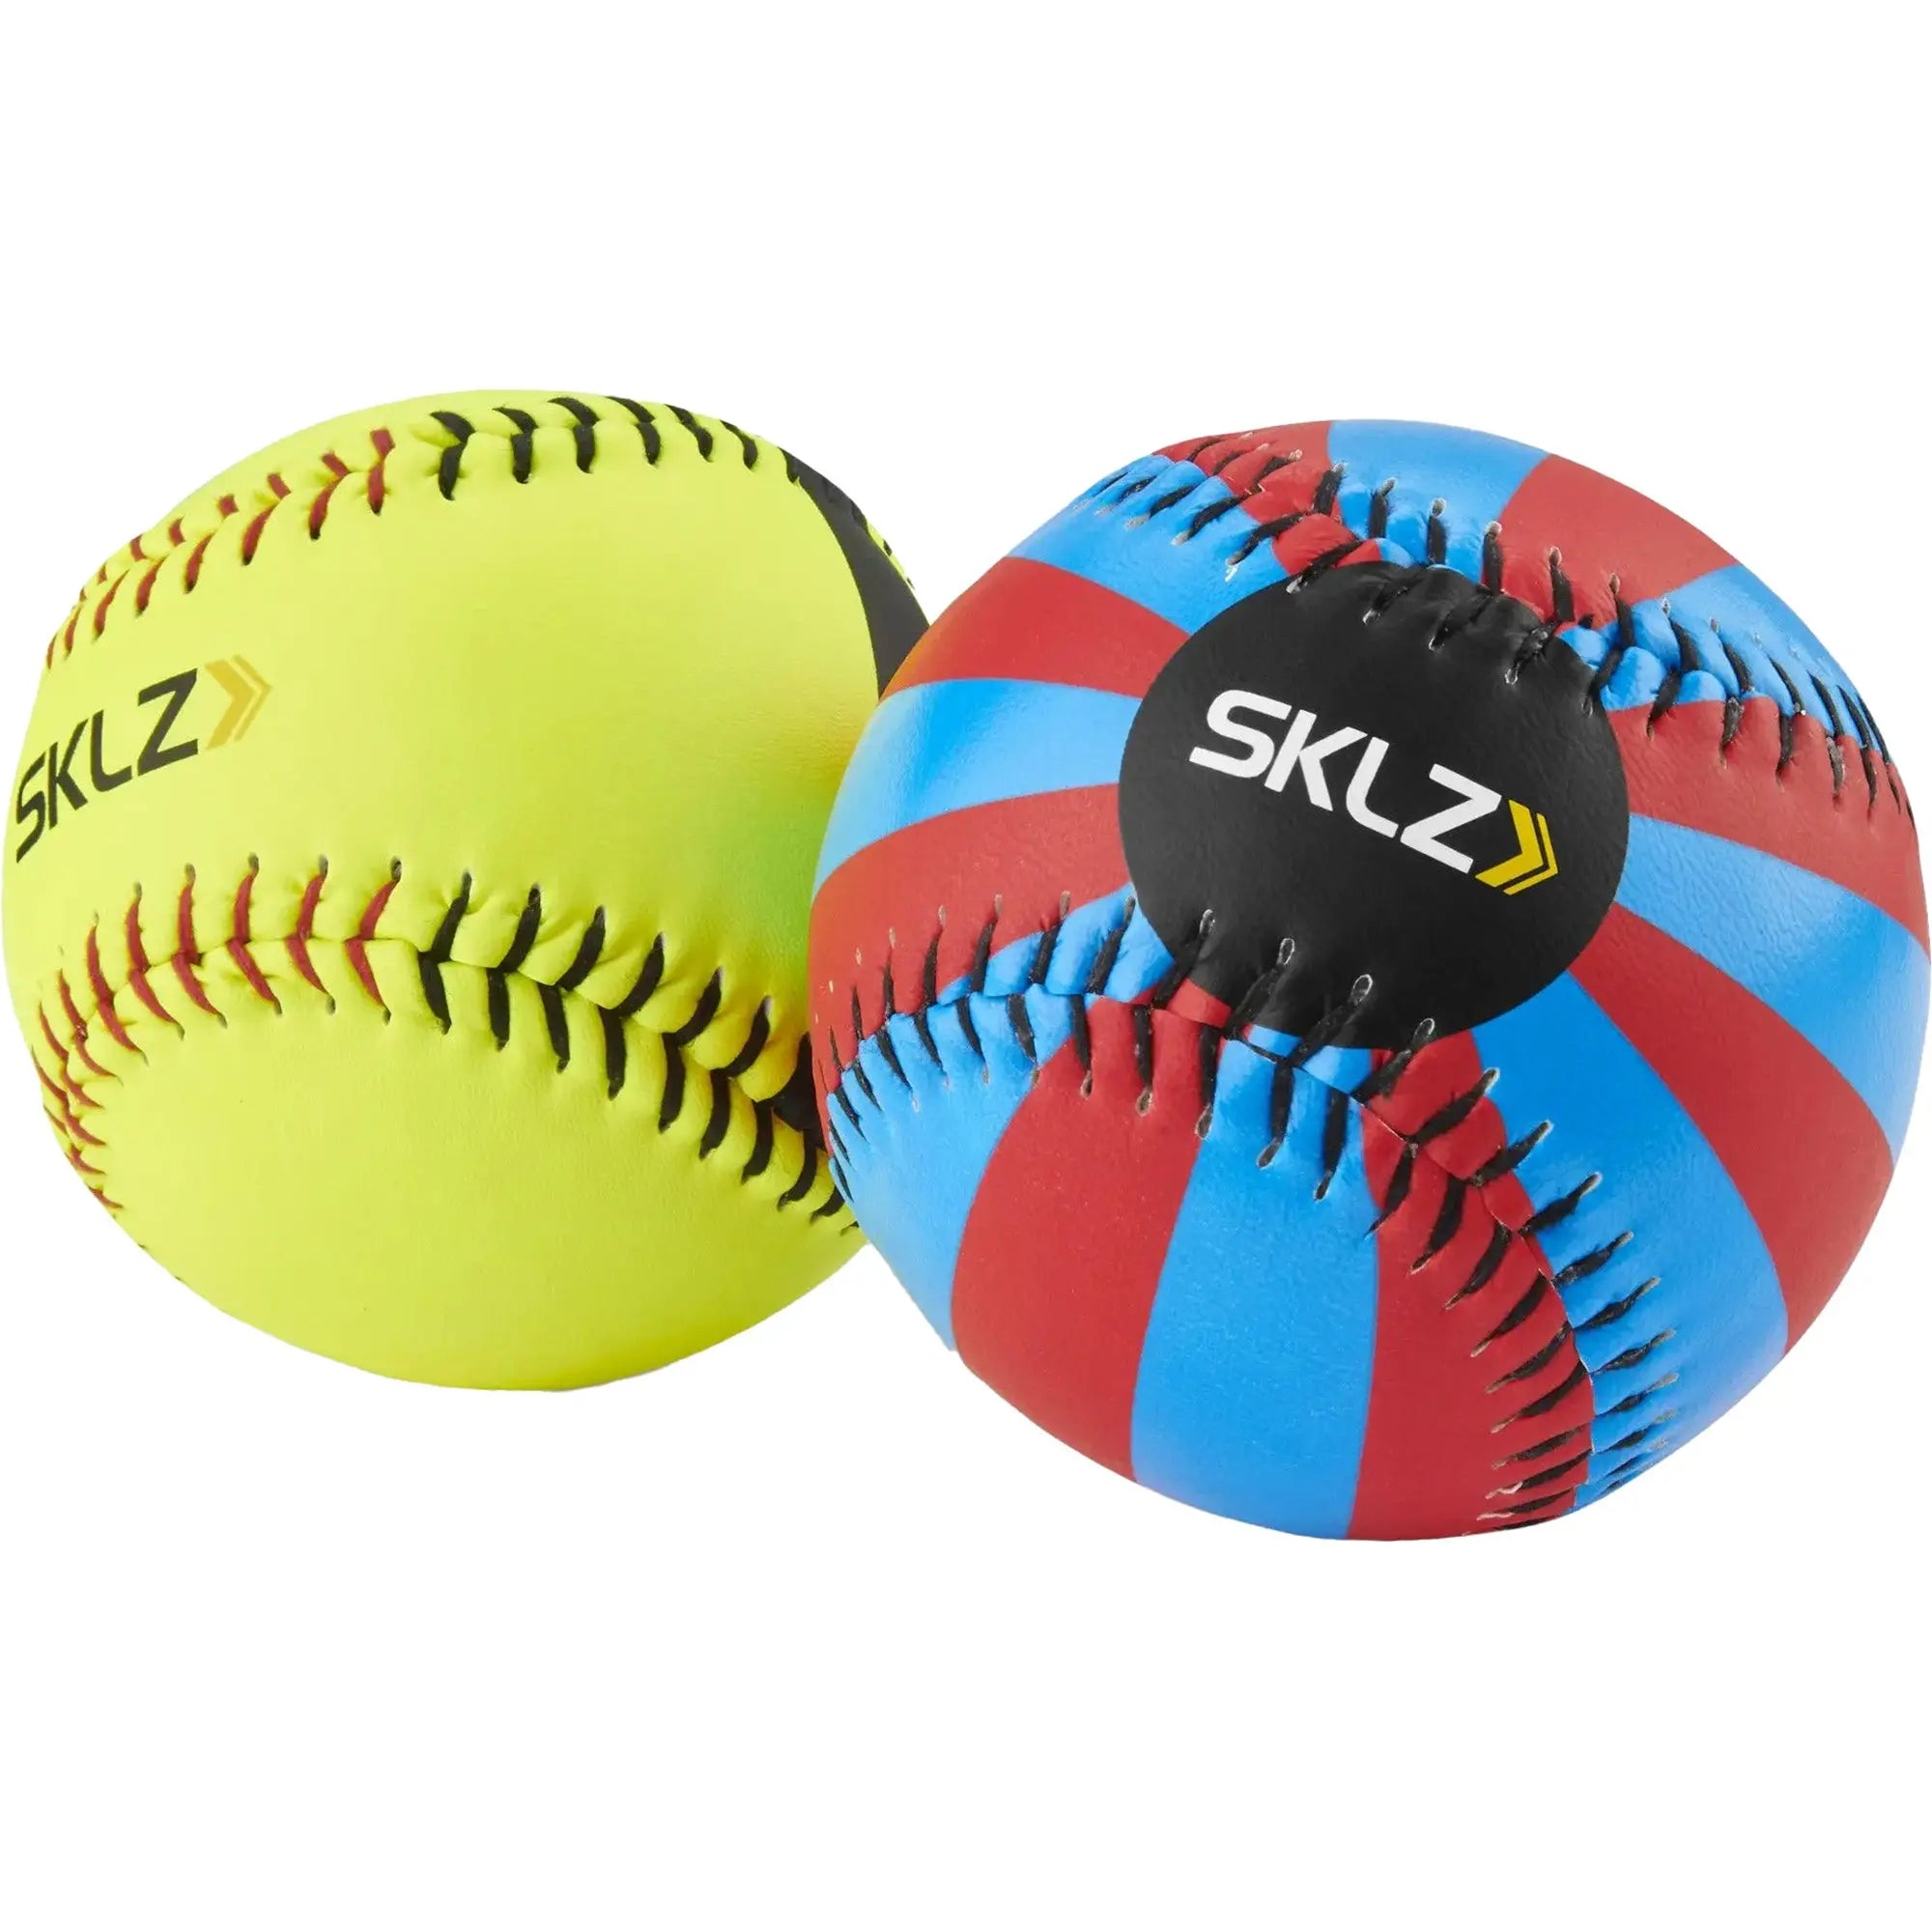 SKLZ Spin Vision Softball 2-Pack SKLZ